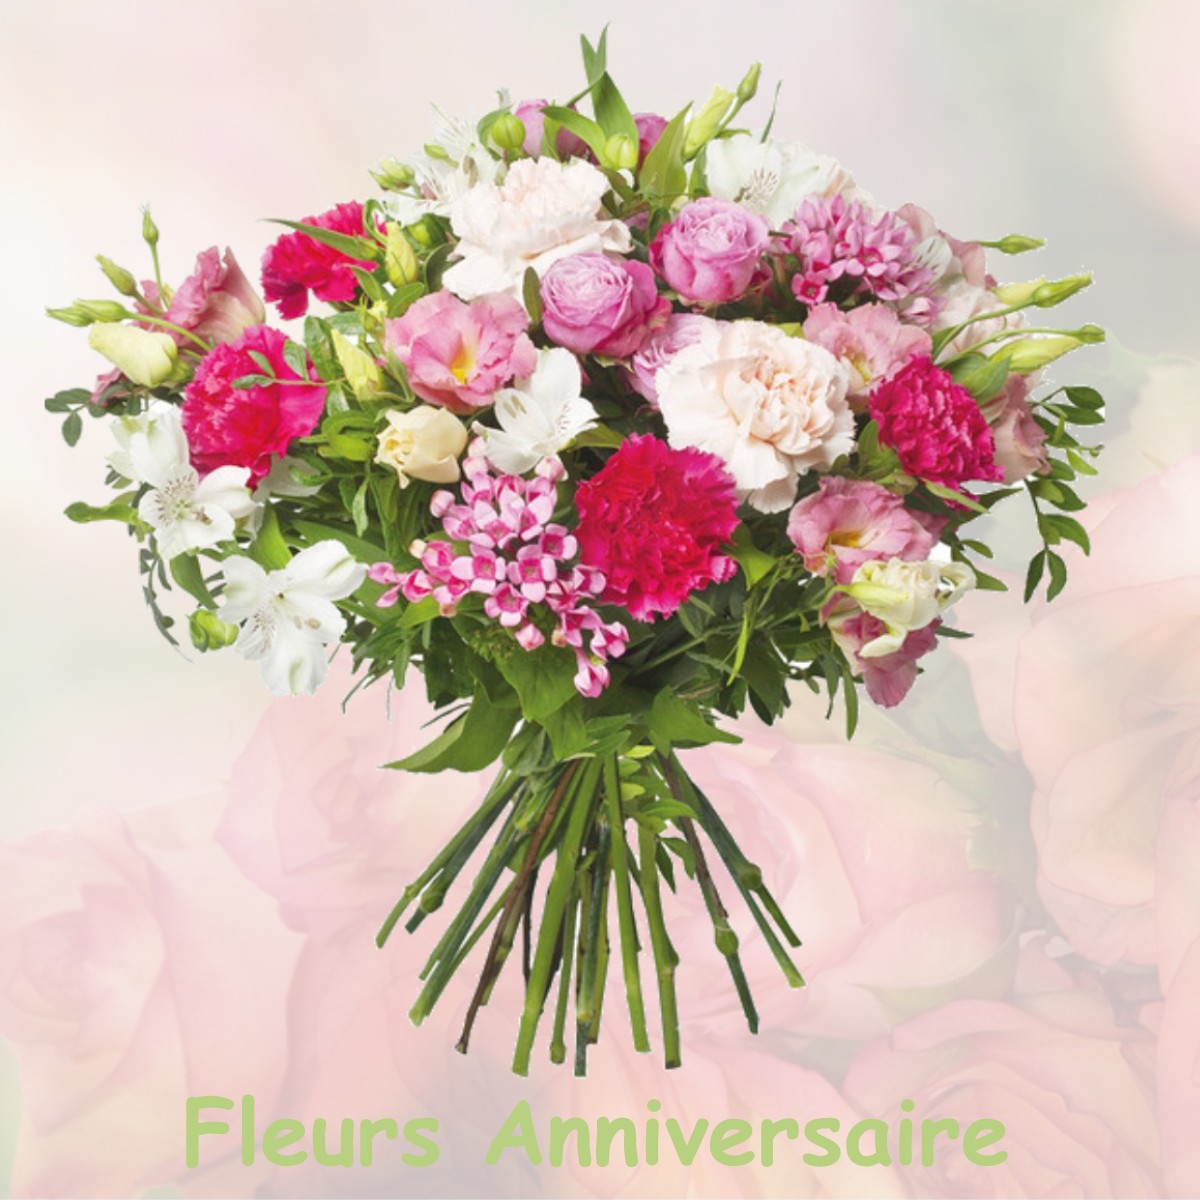 fleurs anniversaire SOULTZ-HAUT-RHIN